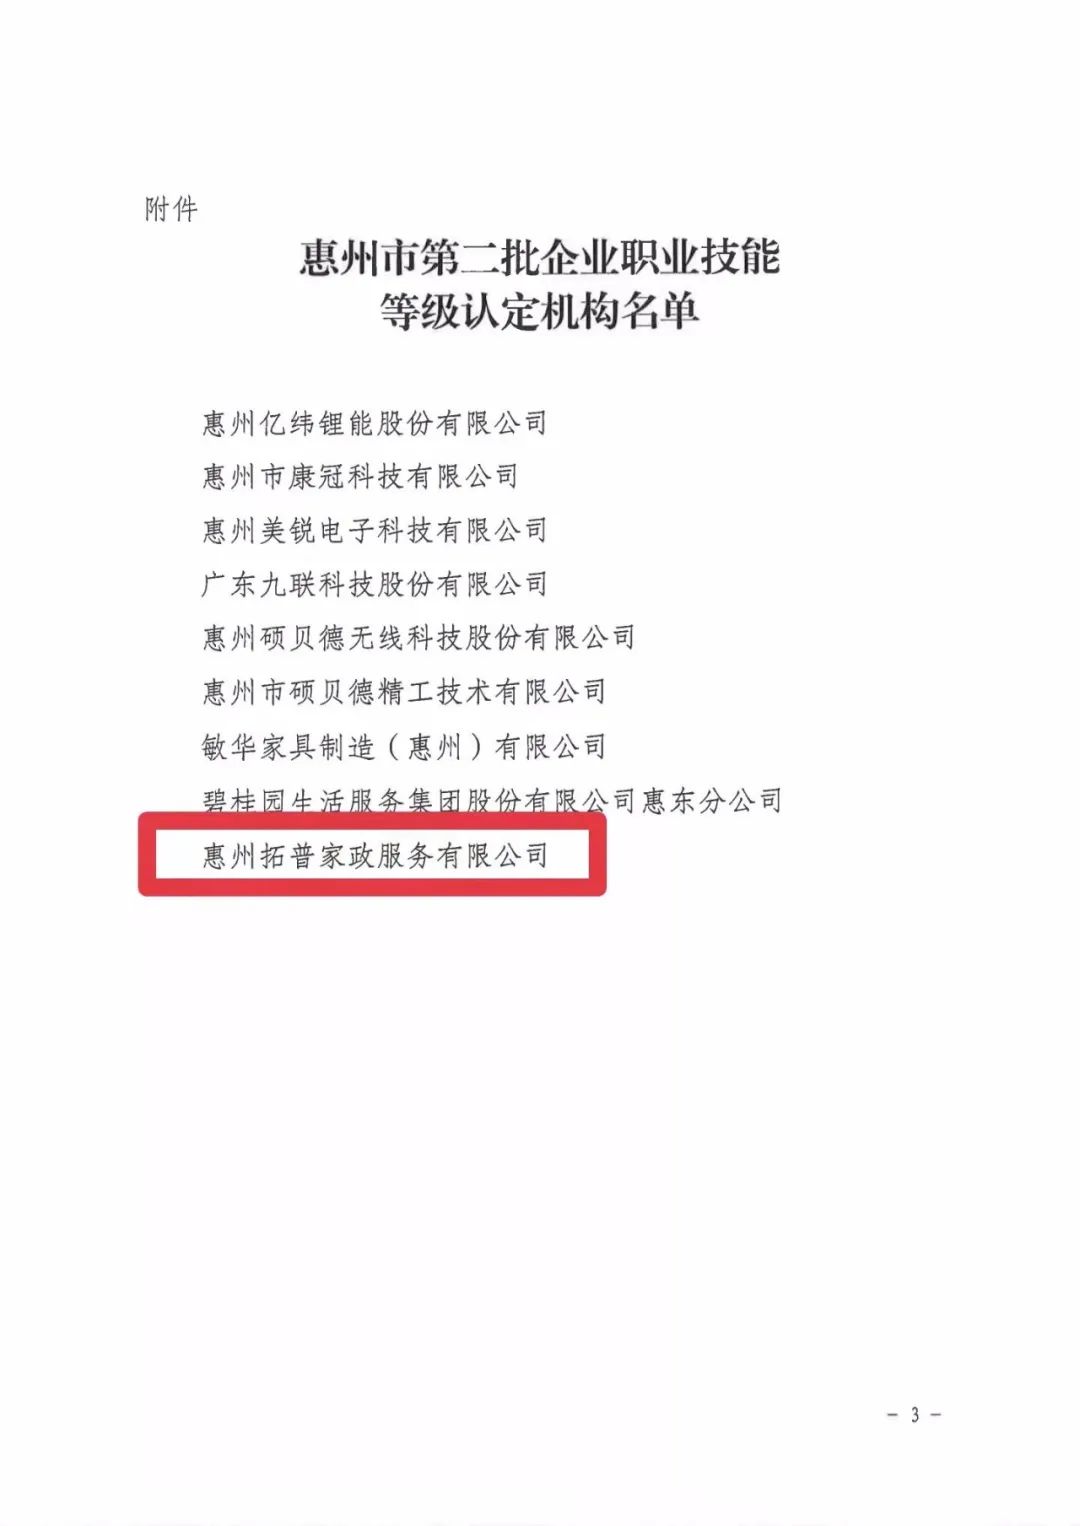 惠州拓普家政服务有限公司成为惠州市企业职业技能等级认定机构